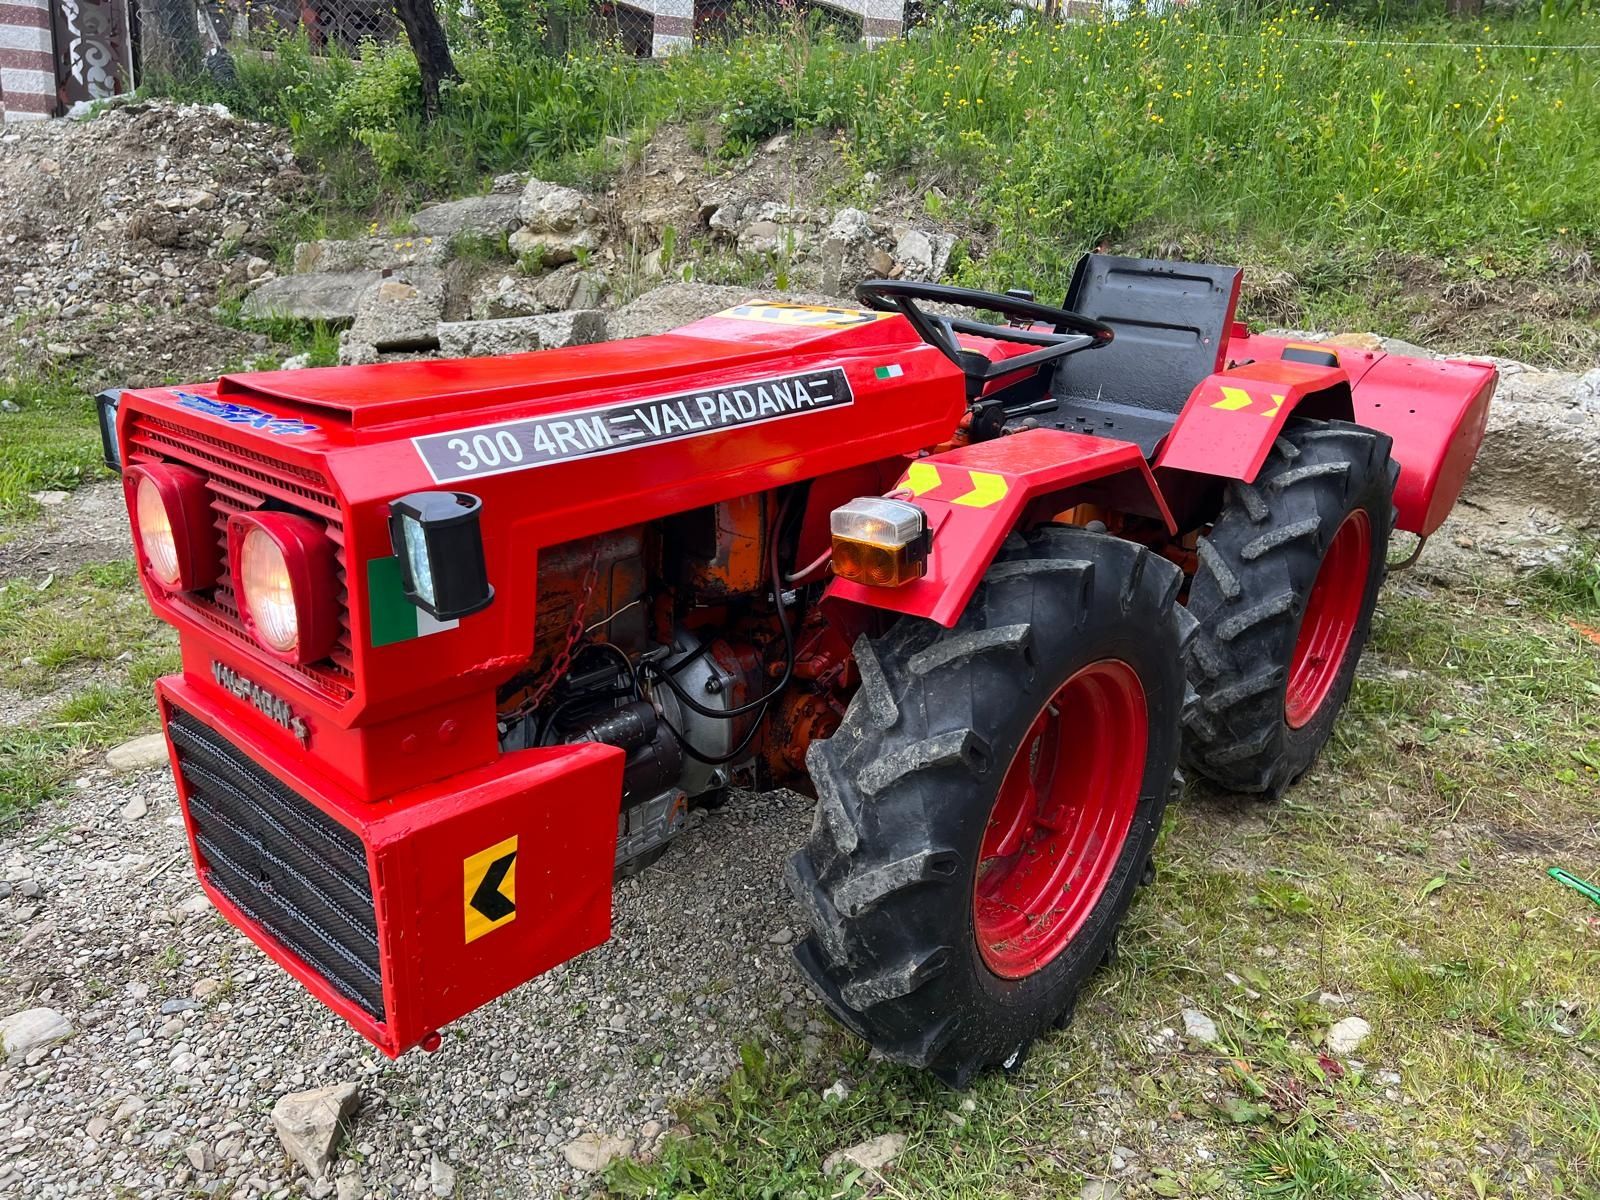 Tractoras Valpadana articulat 4x4